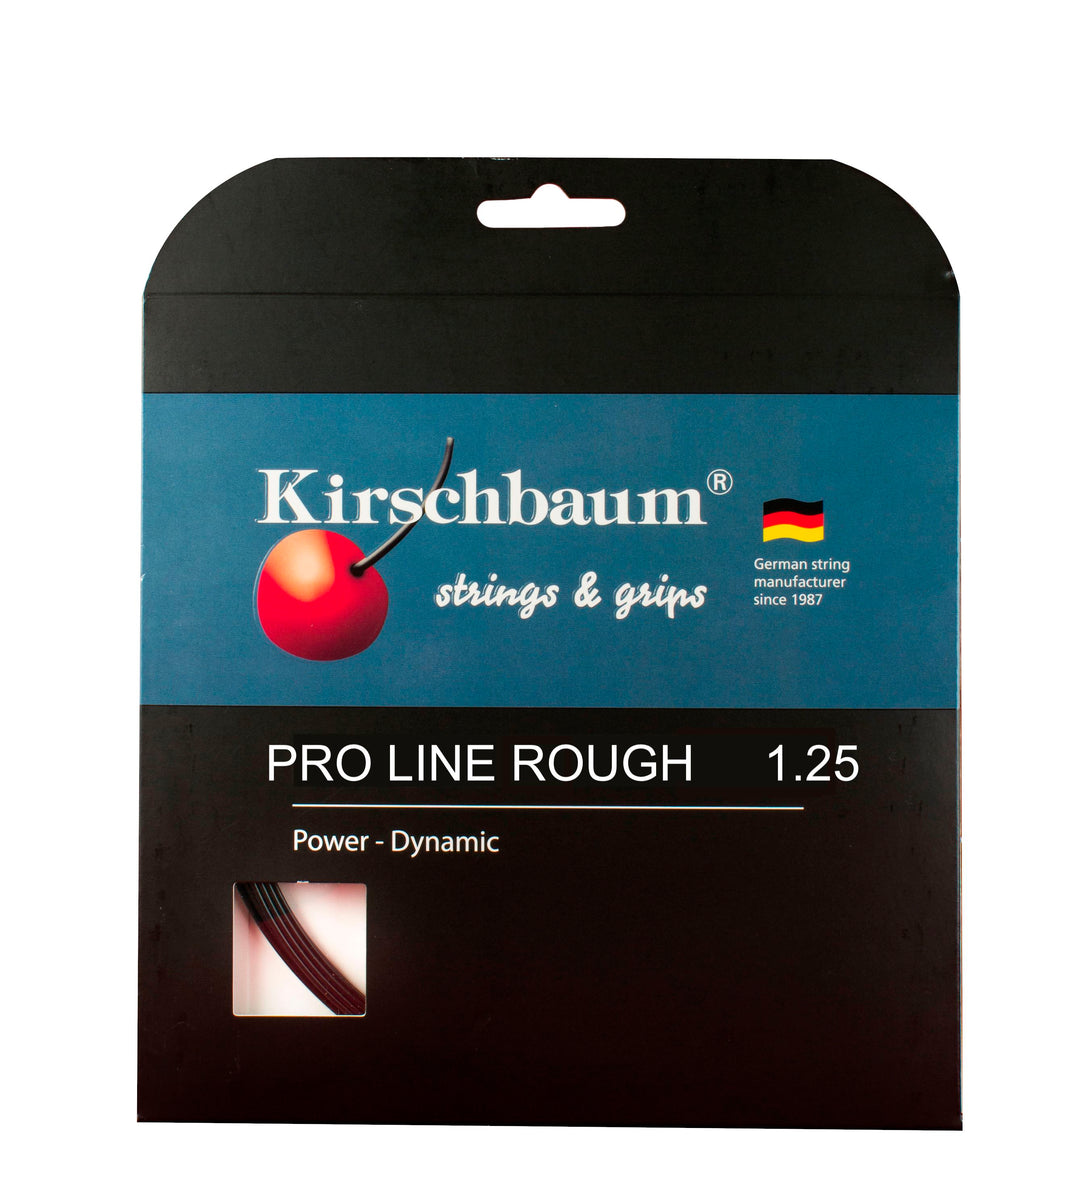 Kirschbaum Pro Line Rough 125 17g Tennis 12M String Set Tennis Strings Kirschbaum 